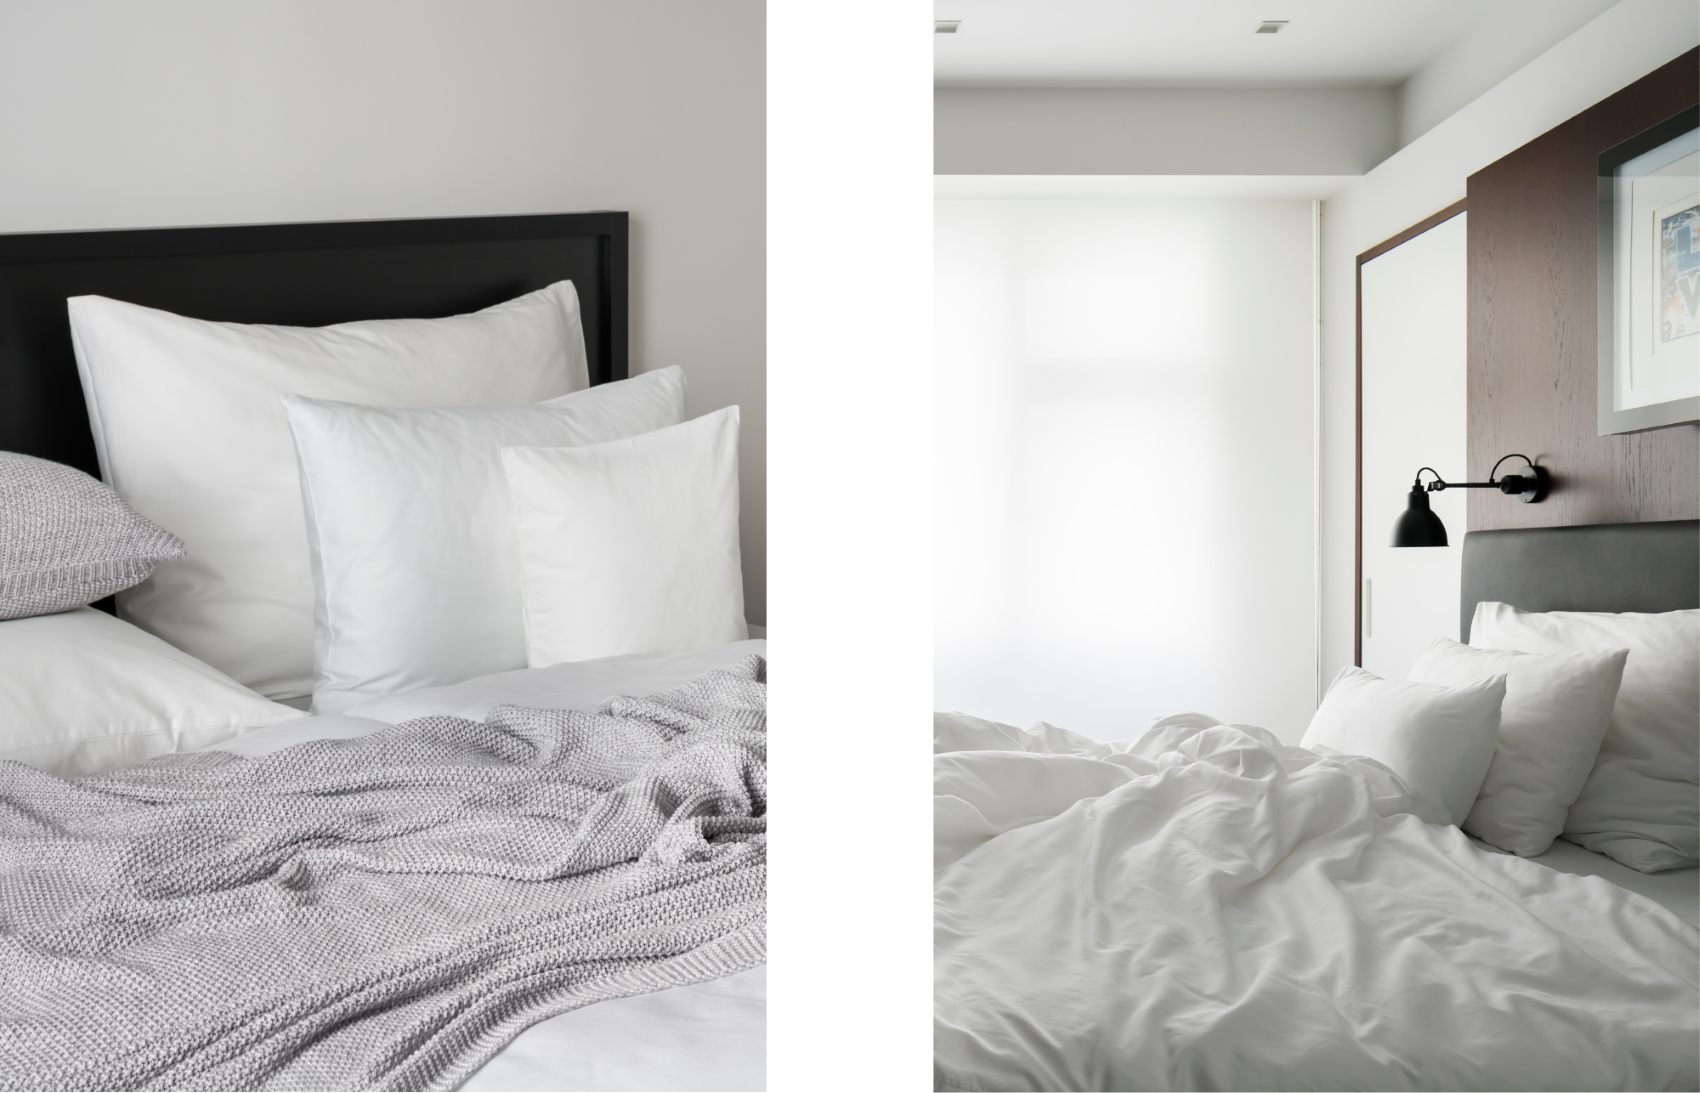 Starostlivosť o posteľnú bielizeň nevyžaduje zložité postupy, stačí sa riadiť pár jednoduchými pravidlami.